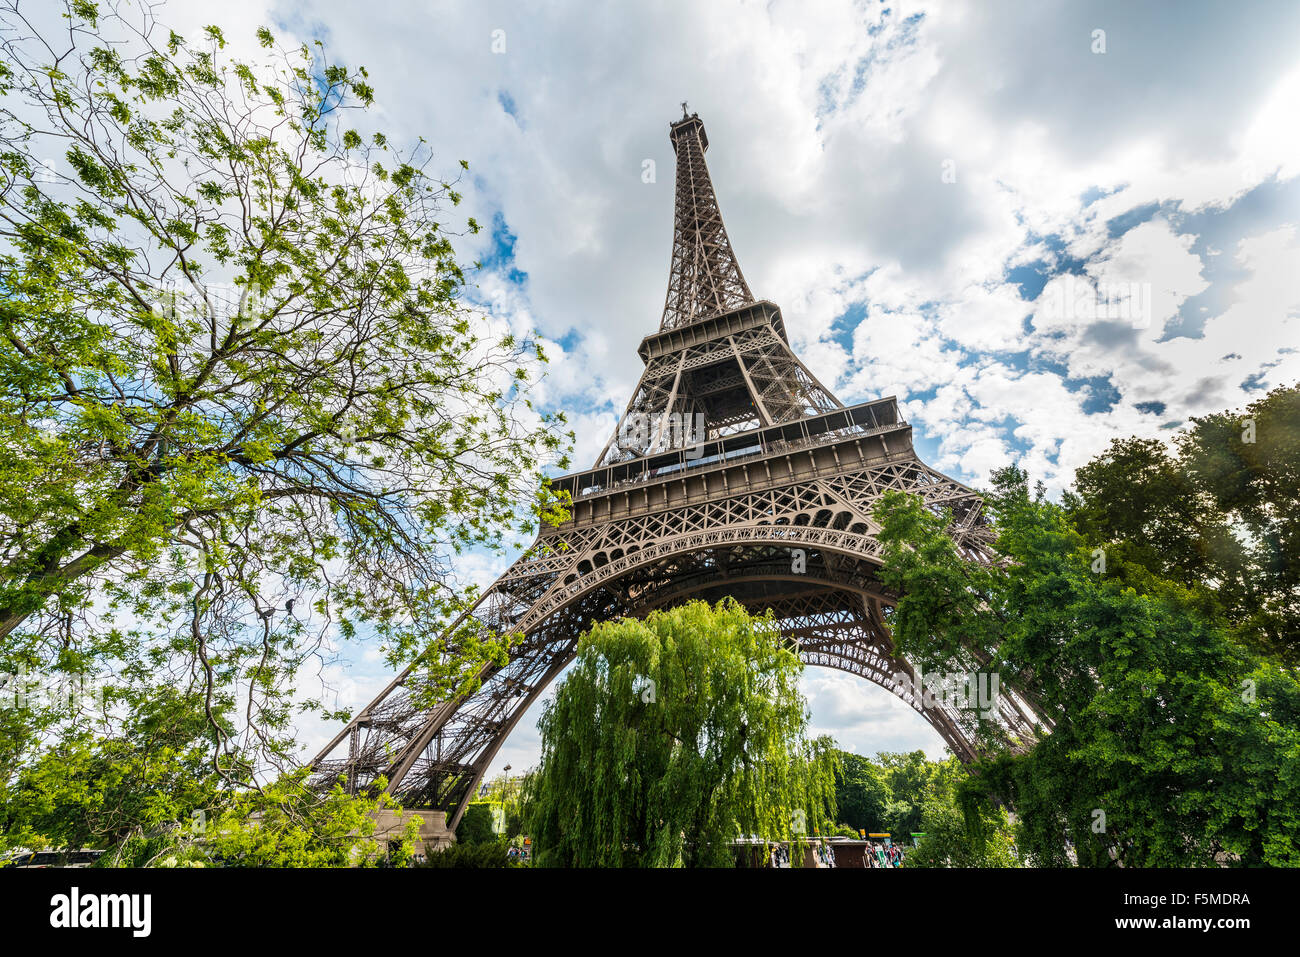 Eiffel Tower, tour Eiffel, Paris, Ile-de-France, France Stock Photo